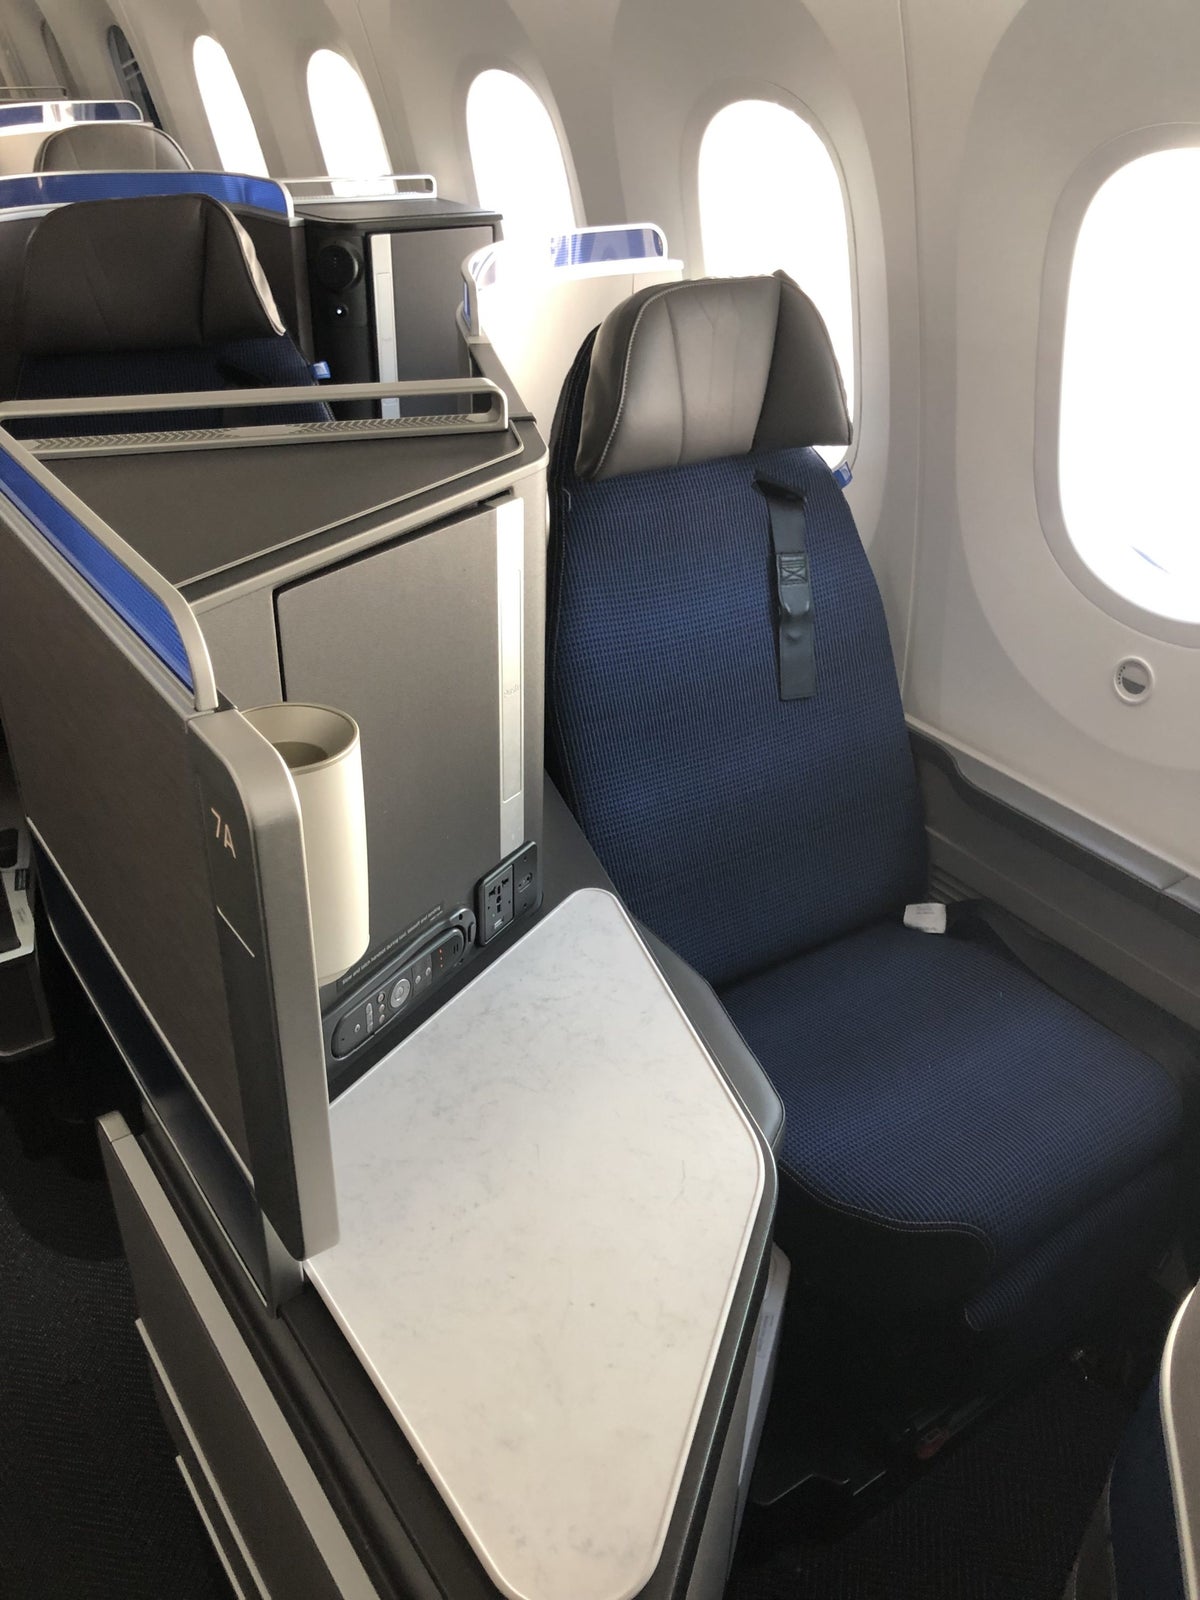 United Polaris 787-10 seat